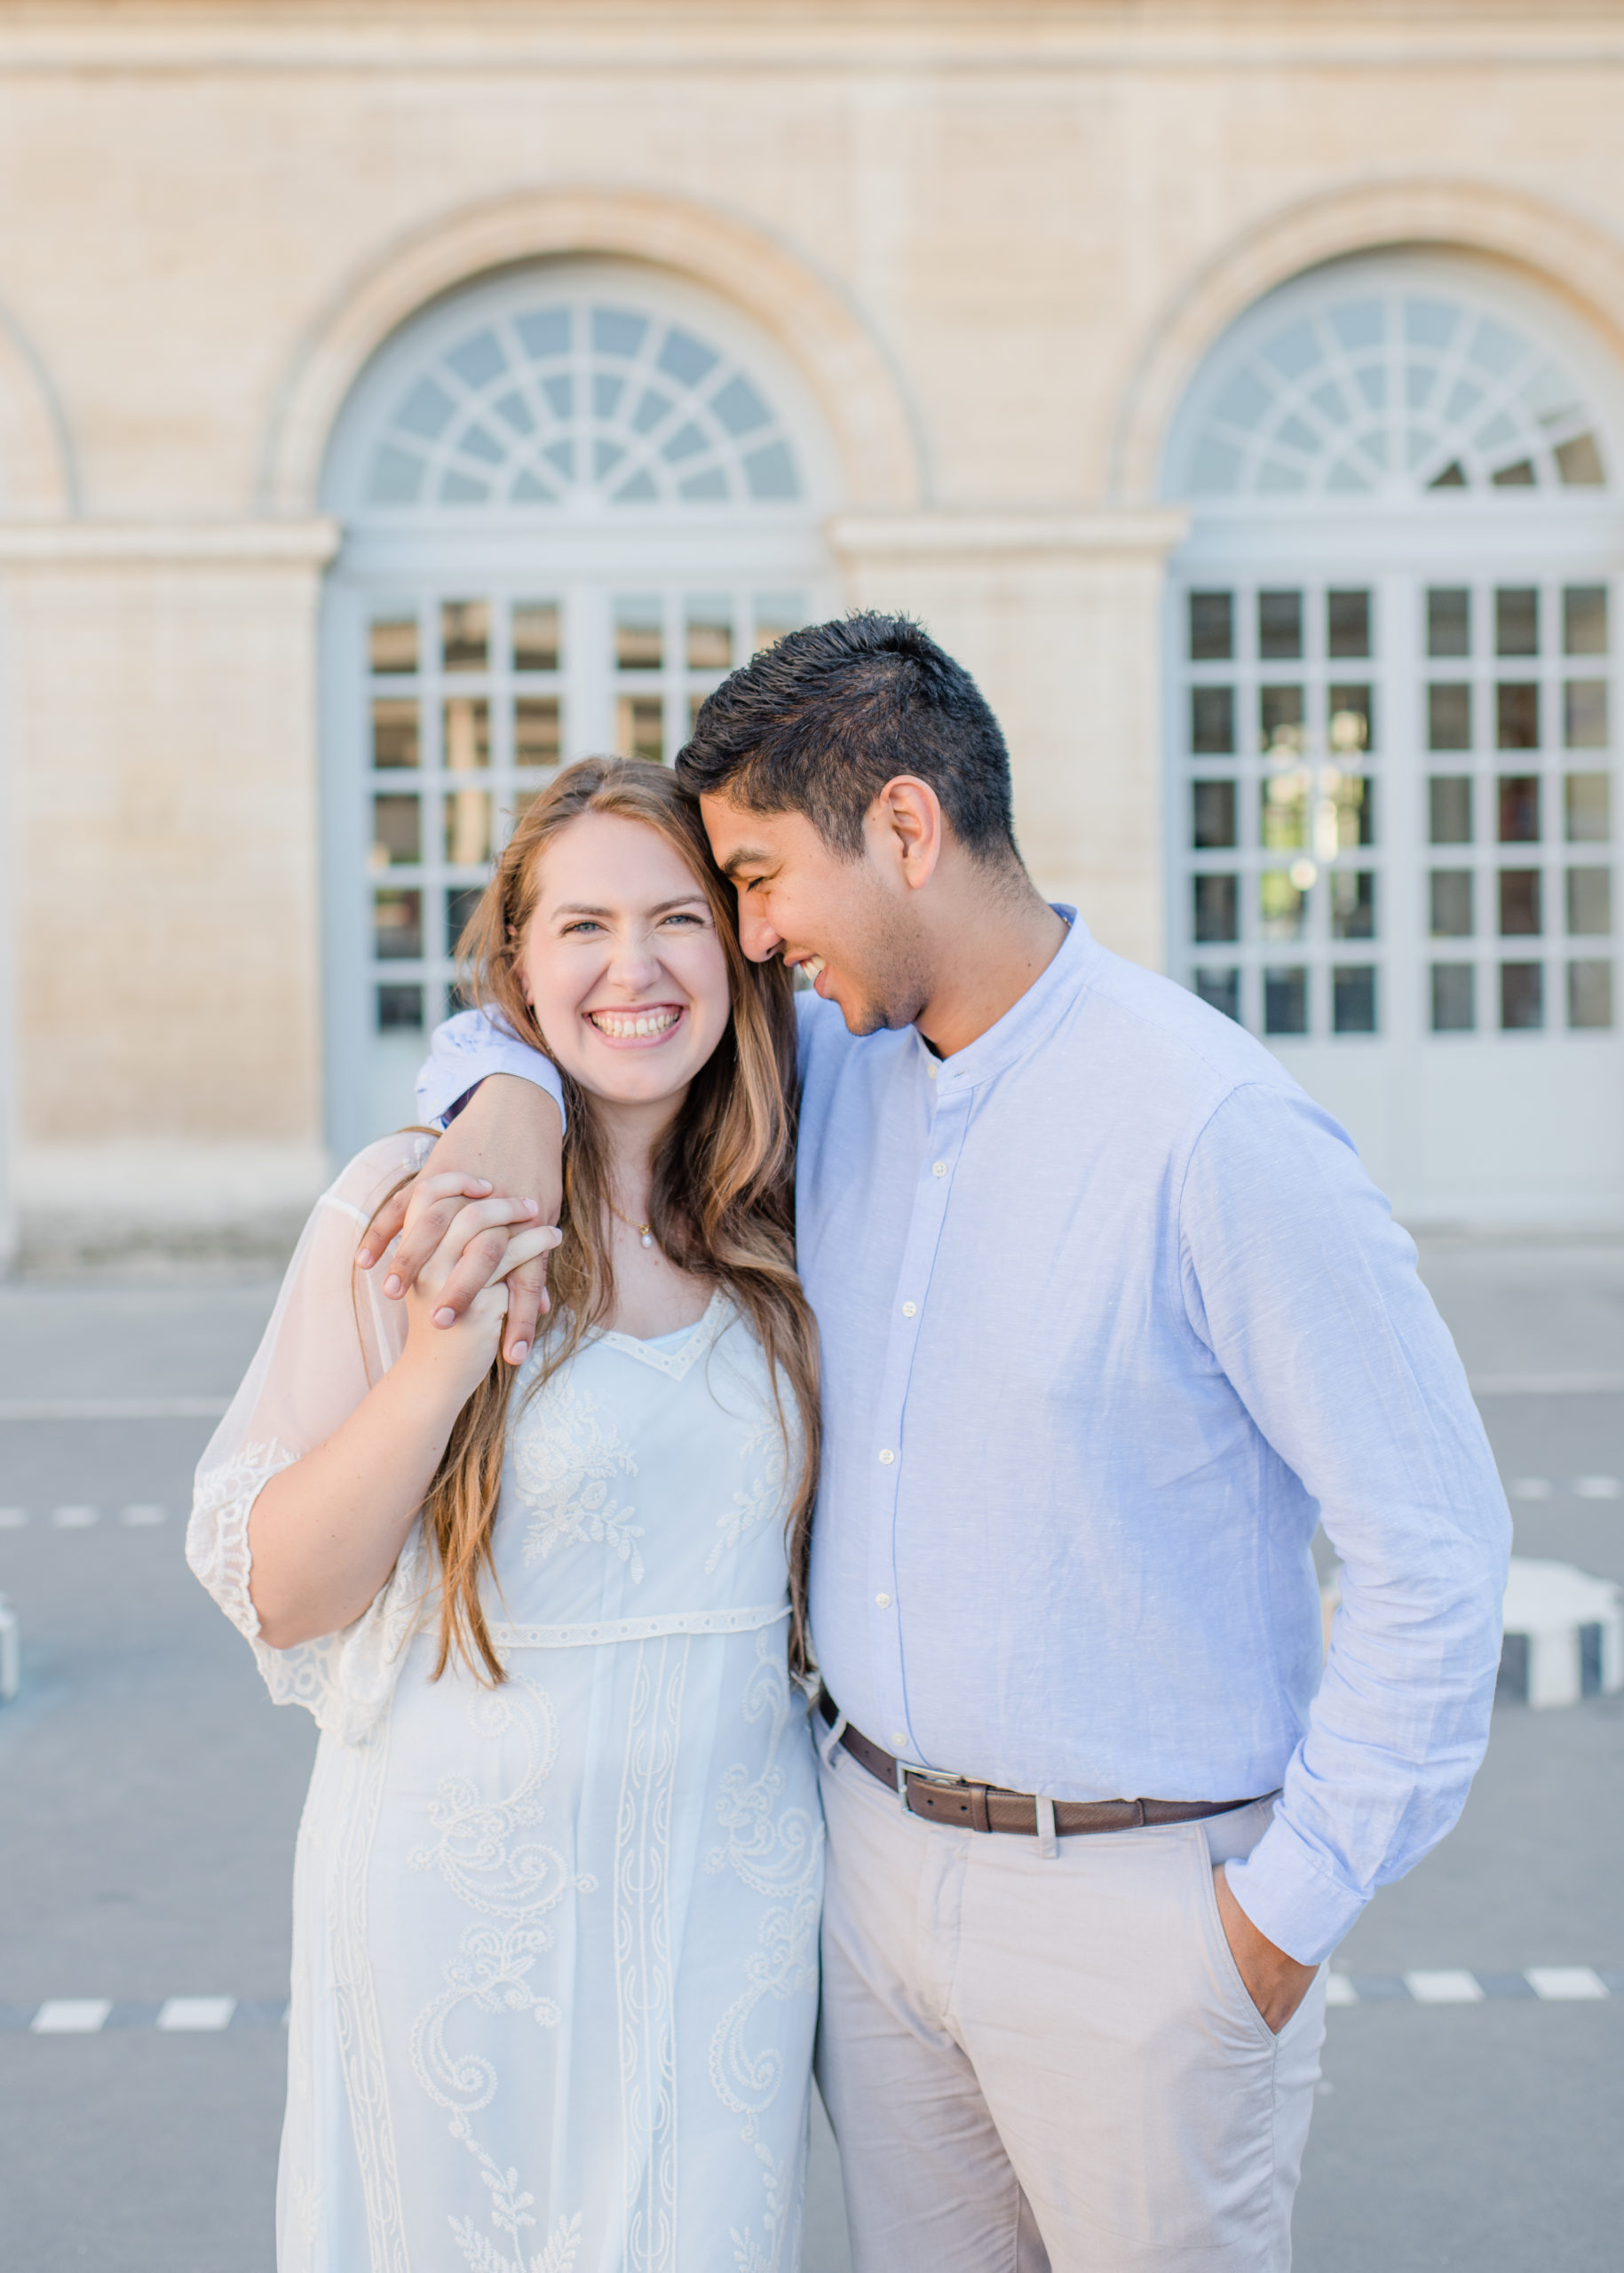 Engagement Photos in Paris